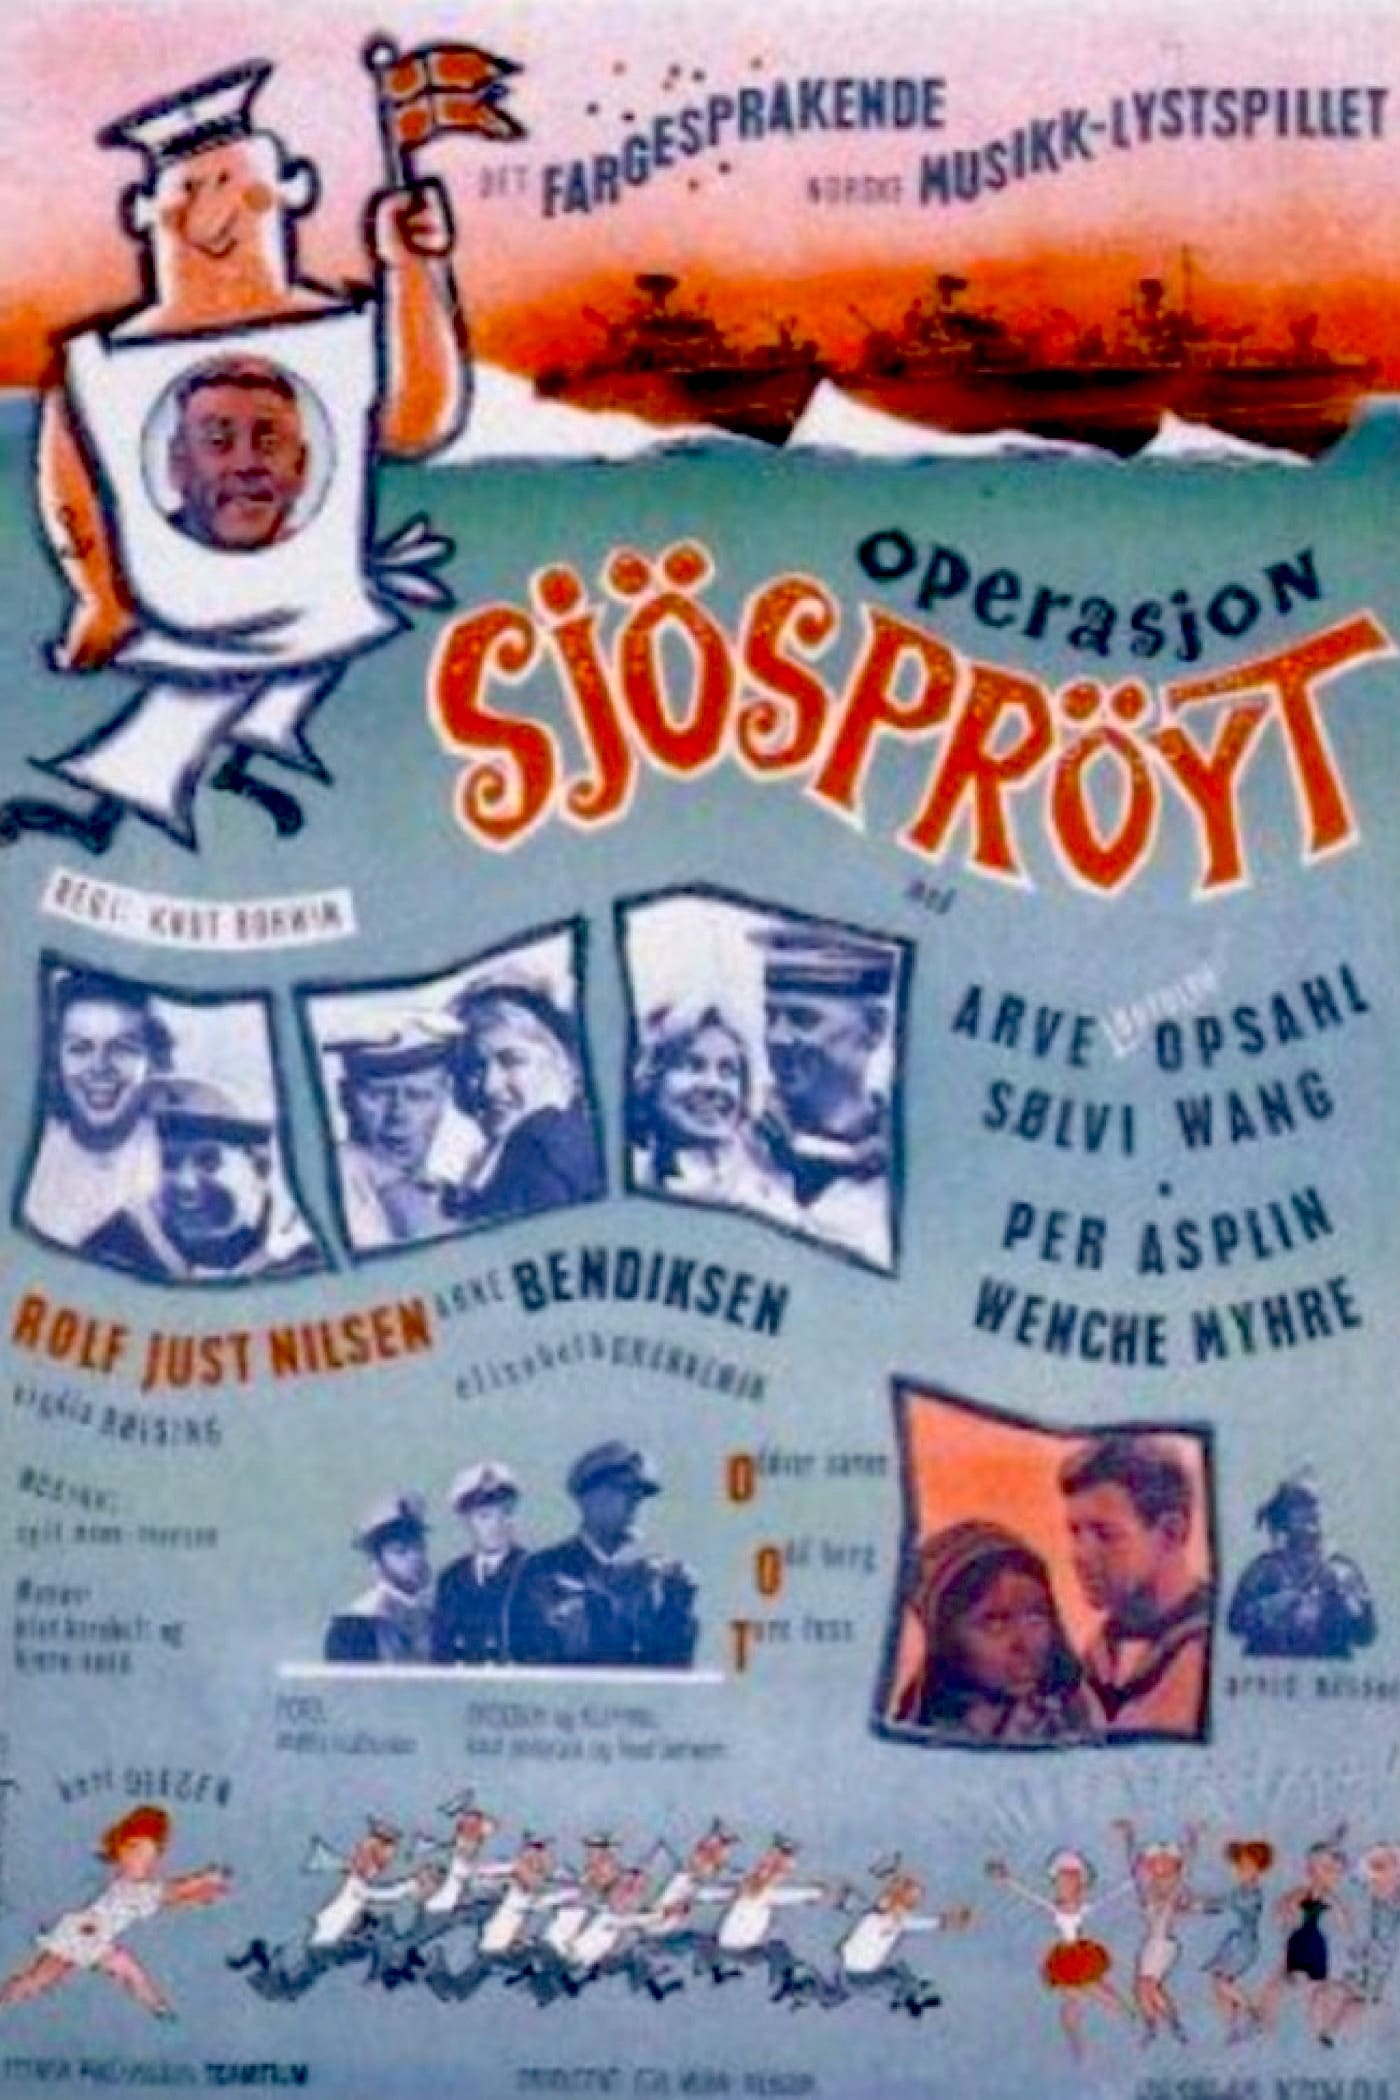 Operasjon Sjøsprøyt (1964)